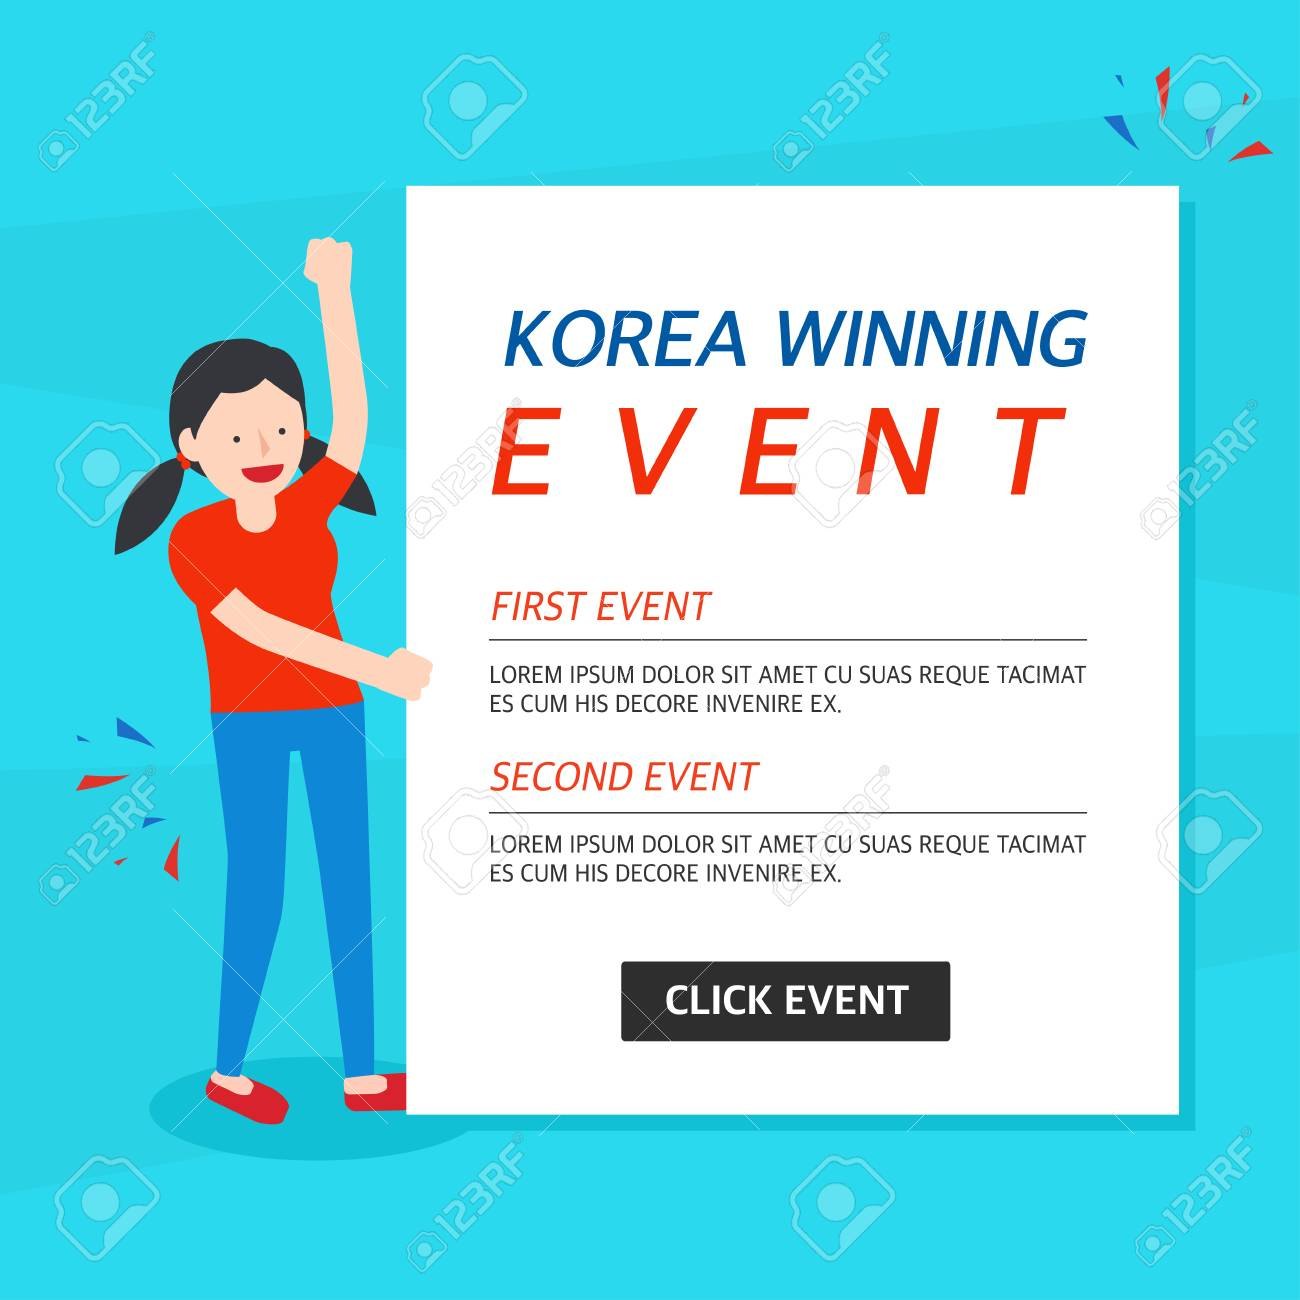 Korea Winning Event Banner Template Throughout Event Banner Template